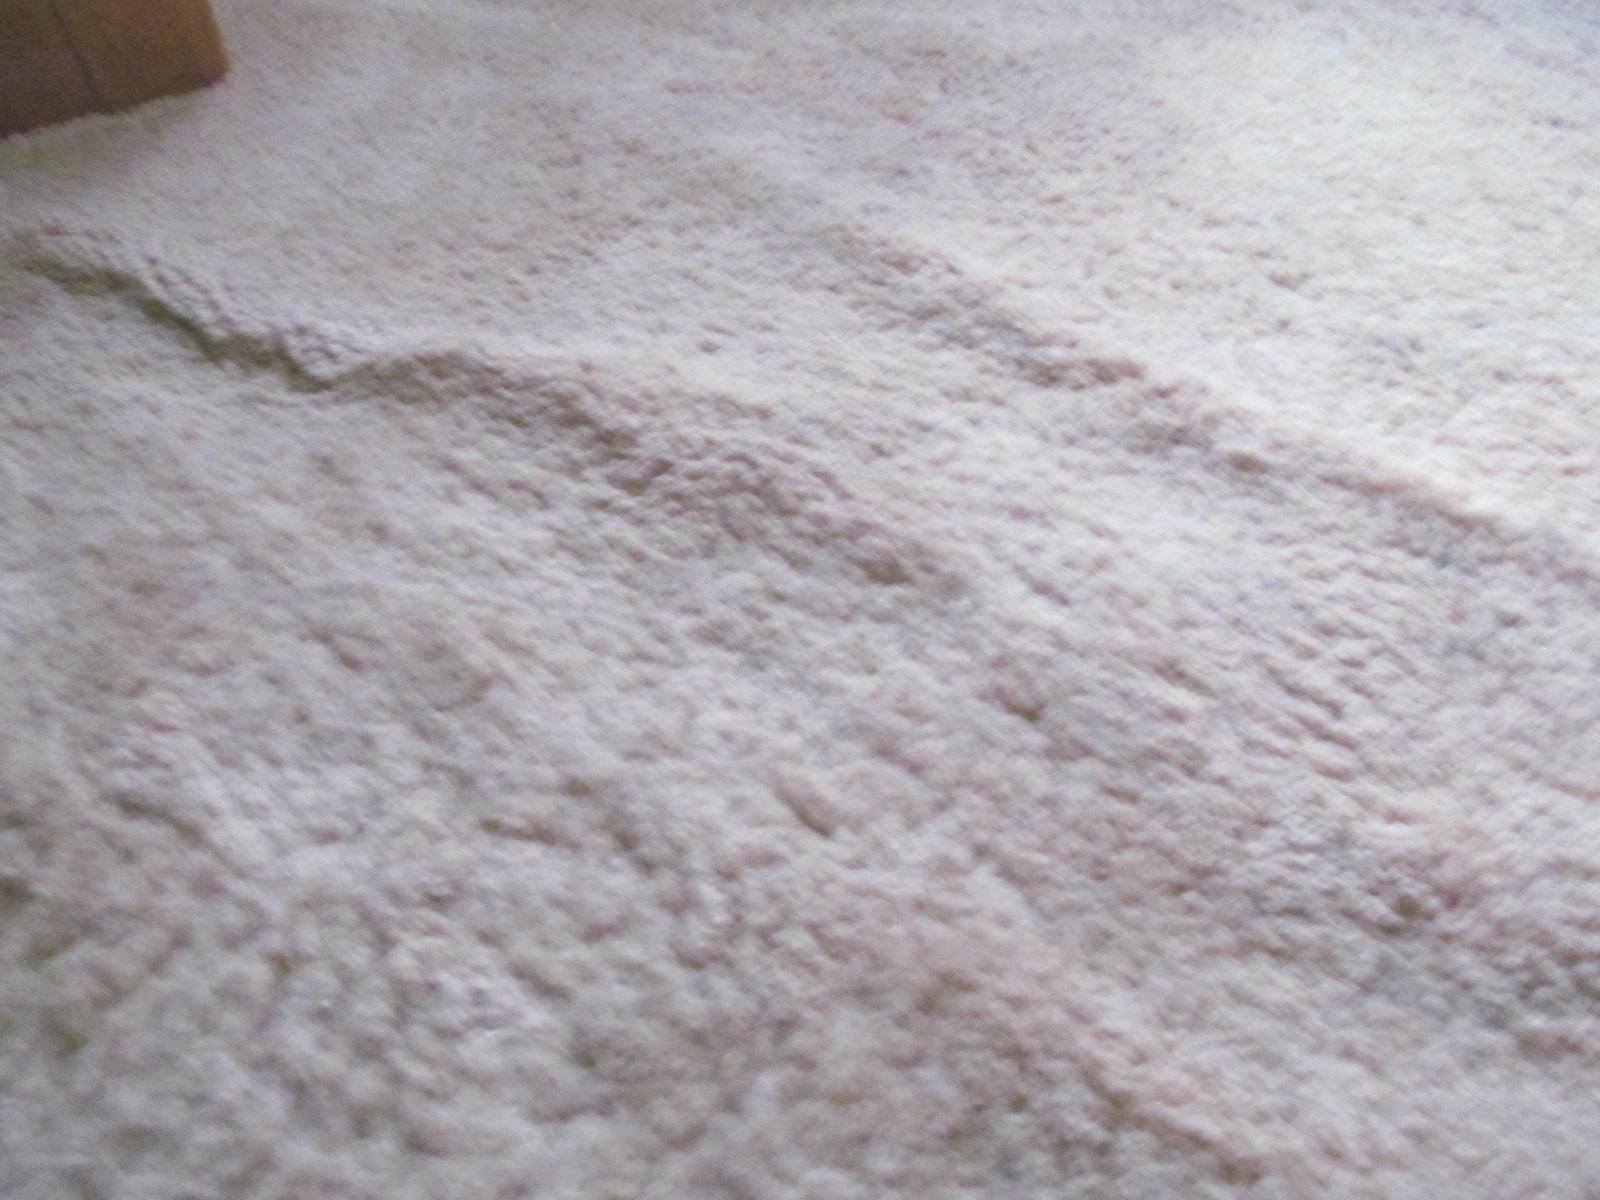 Carpet wrinkled